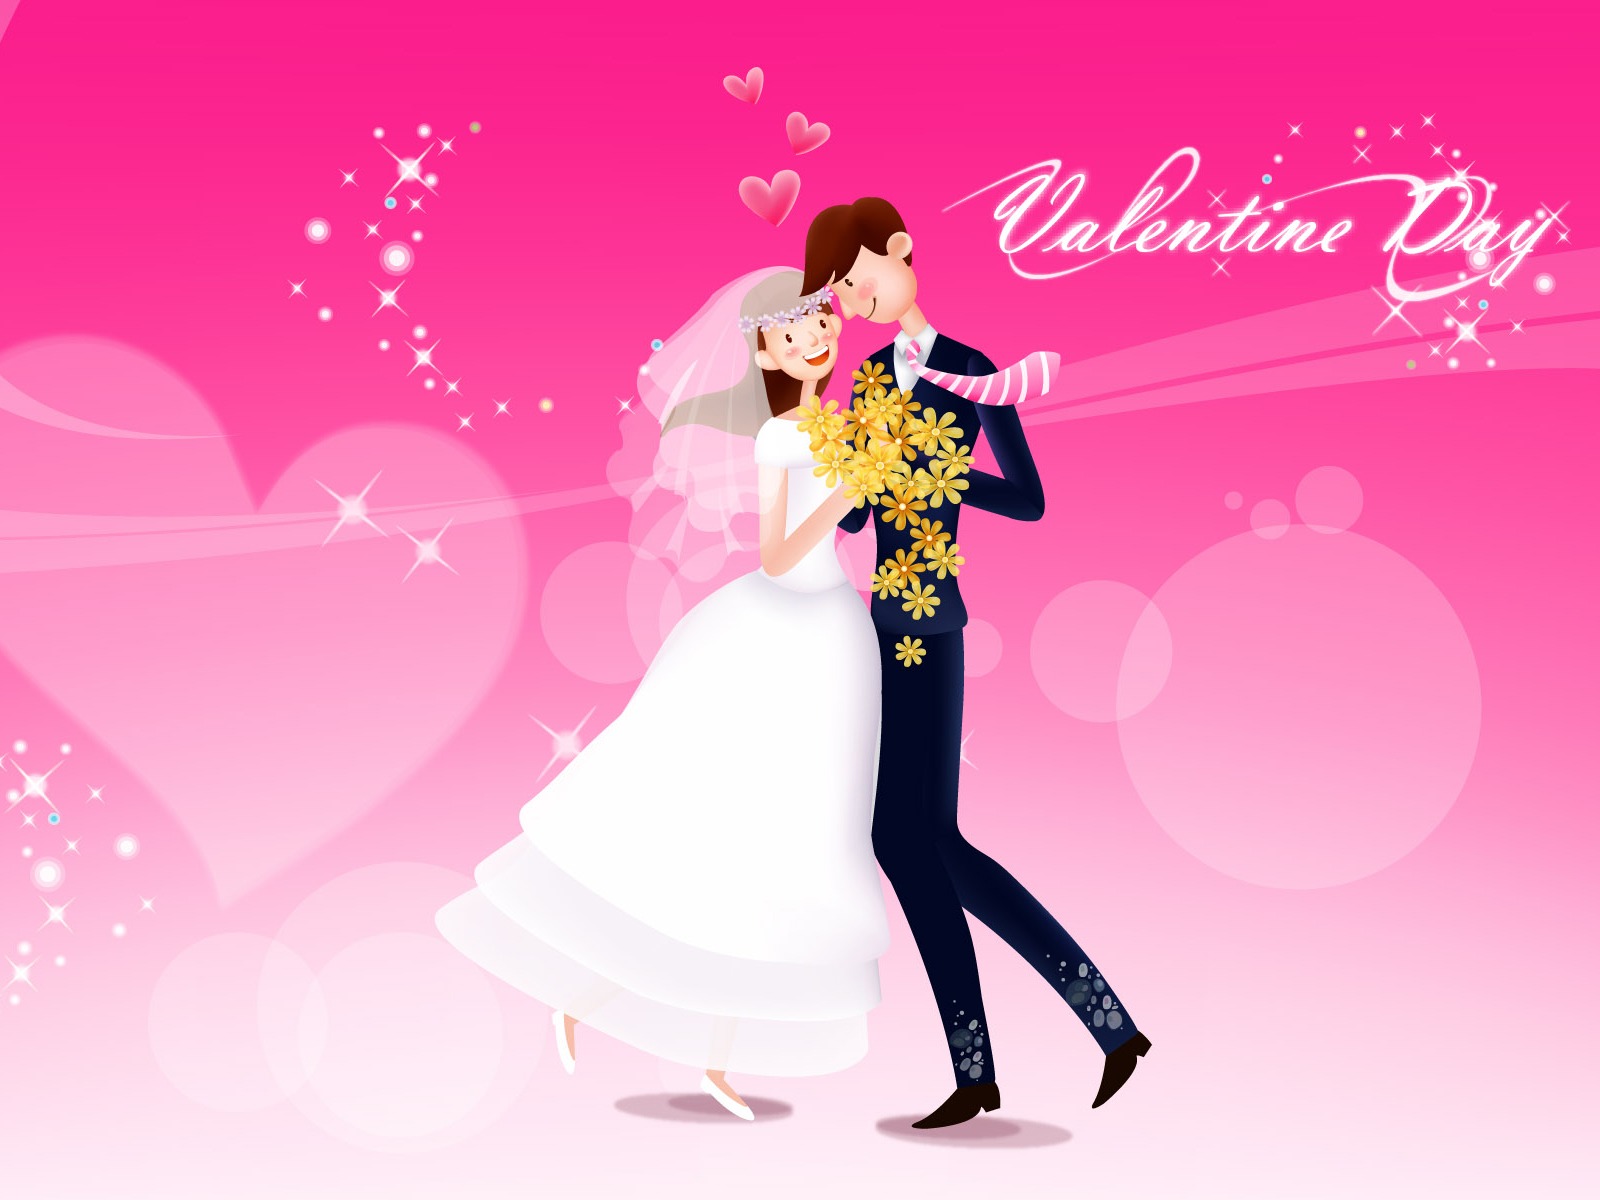 愛のテーマの壁紙,ピンク,出来事,フォーマルウェア,バレンタイン・デー,ロマンス